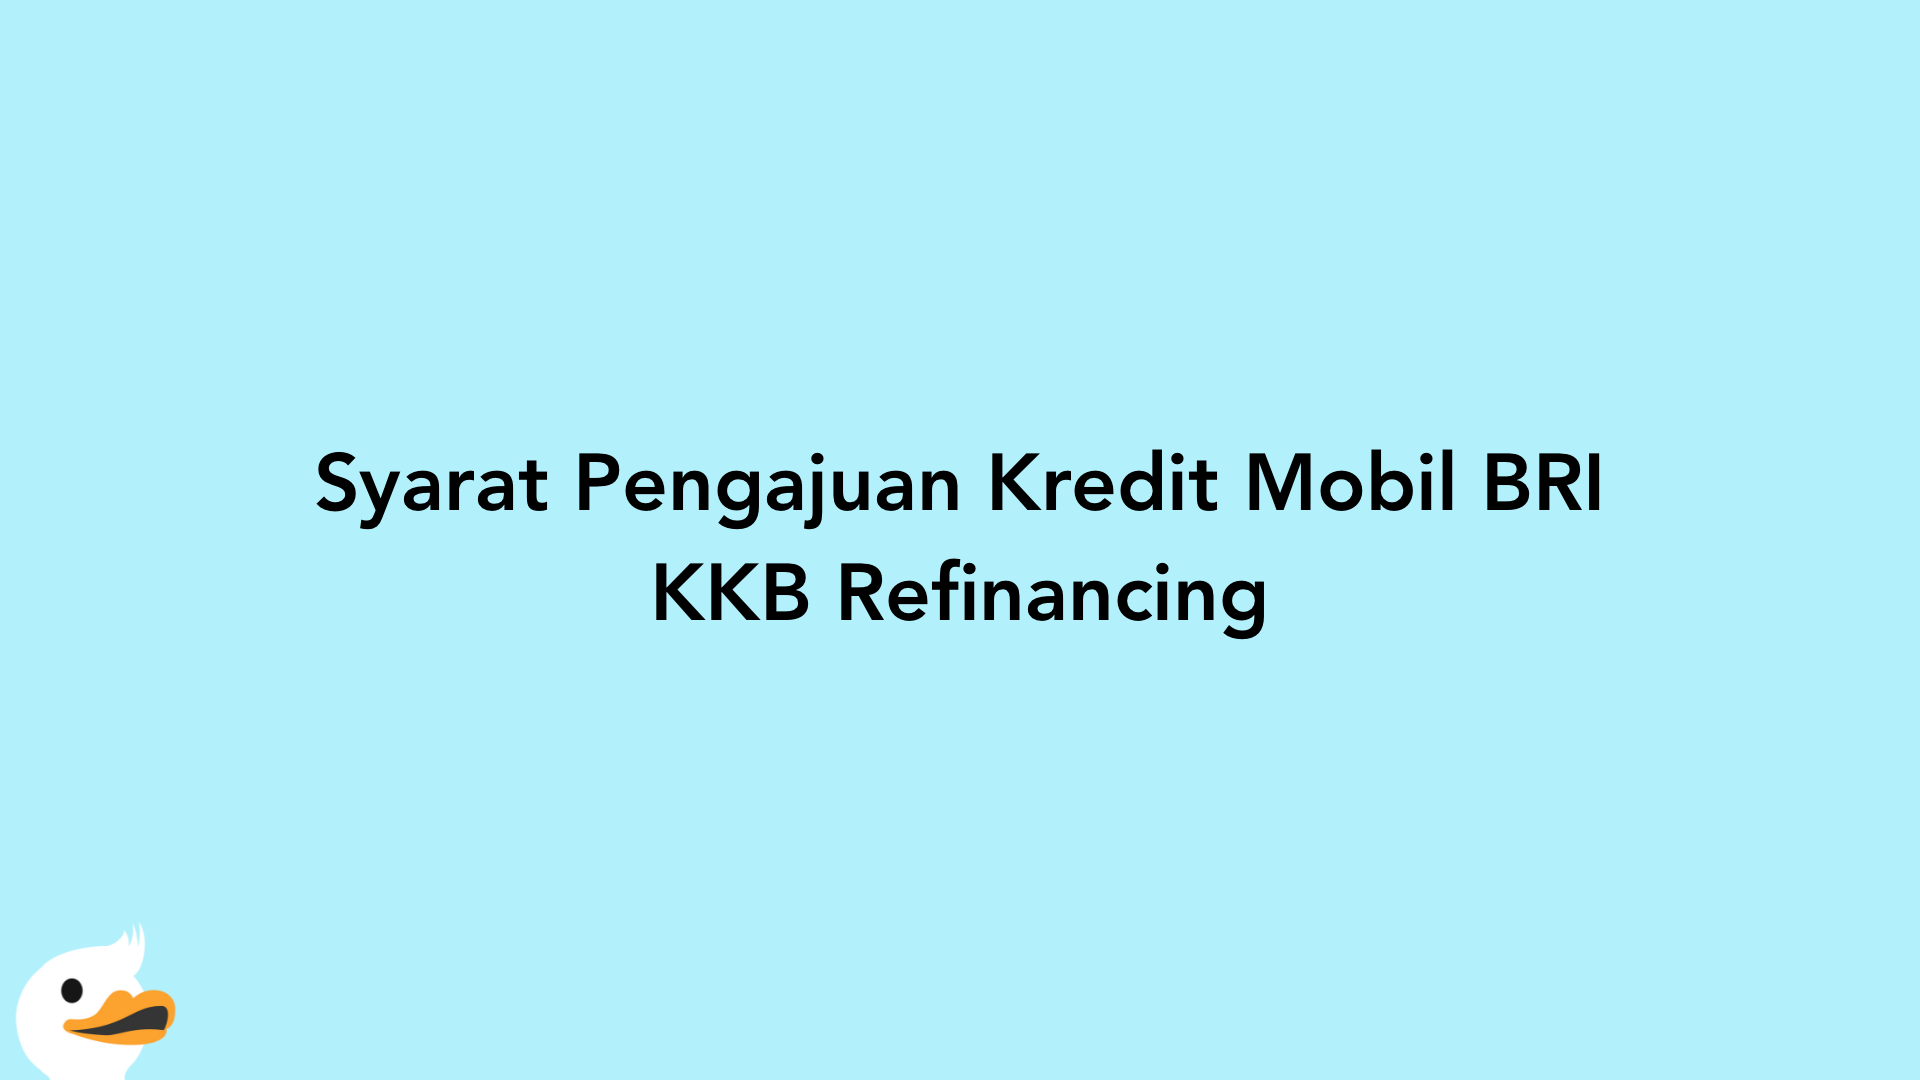 Syarat Pengajuan Kredit Mobil BRI KKB Refinancing